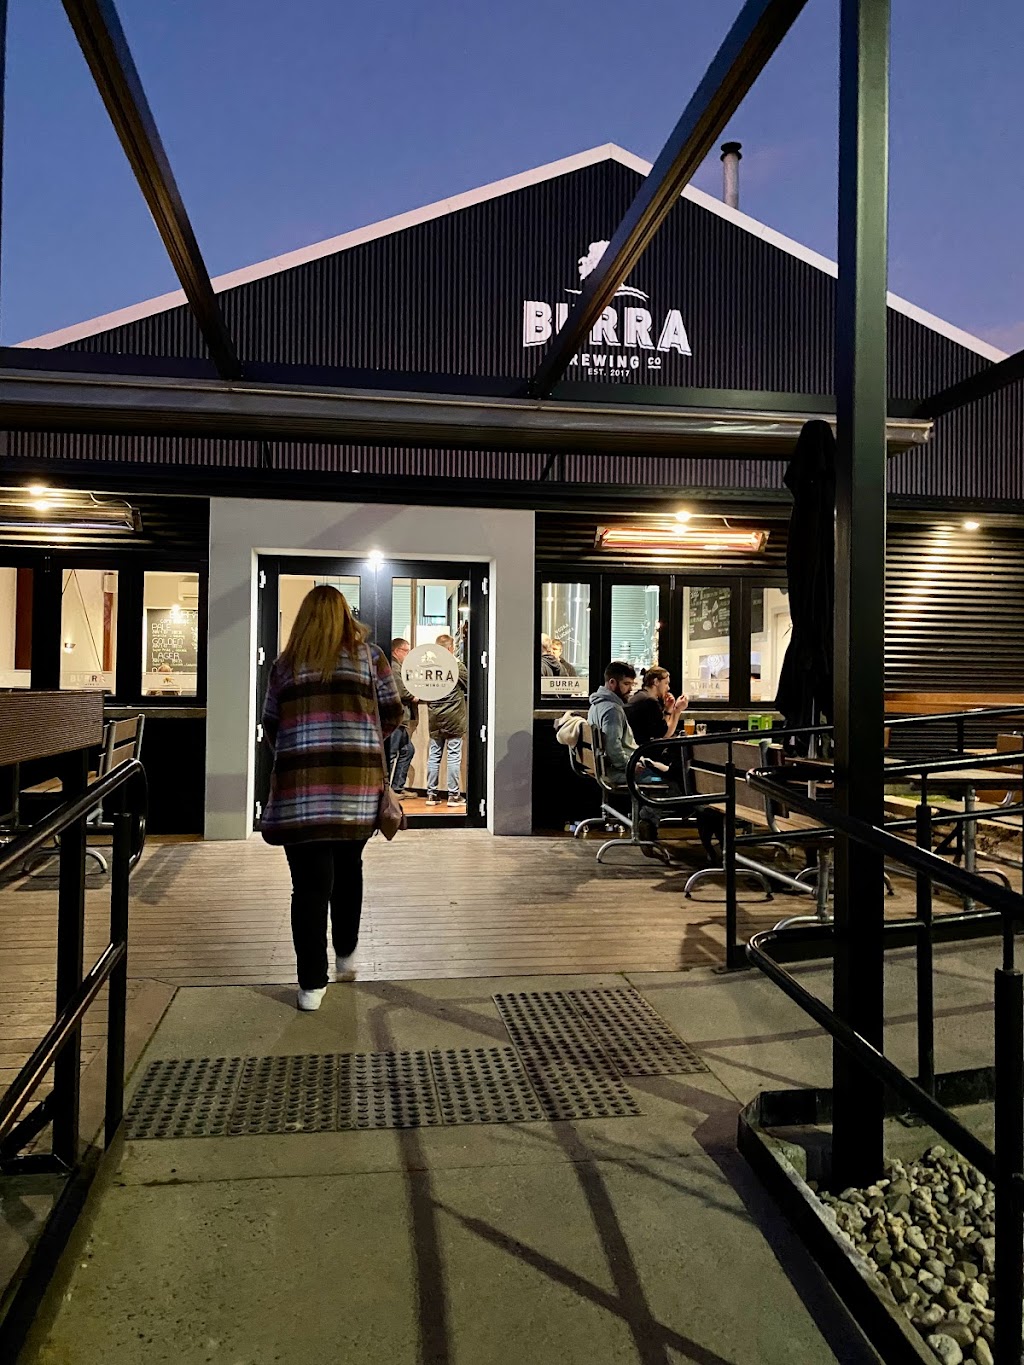 Burra Brewing Co | food | 12 Commercial St, Korumburra VIC 3950, Australia | 0356581446 OR +61 3 5658 1446